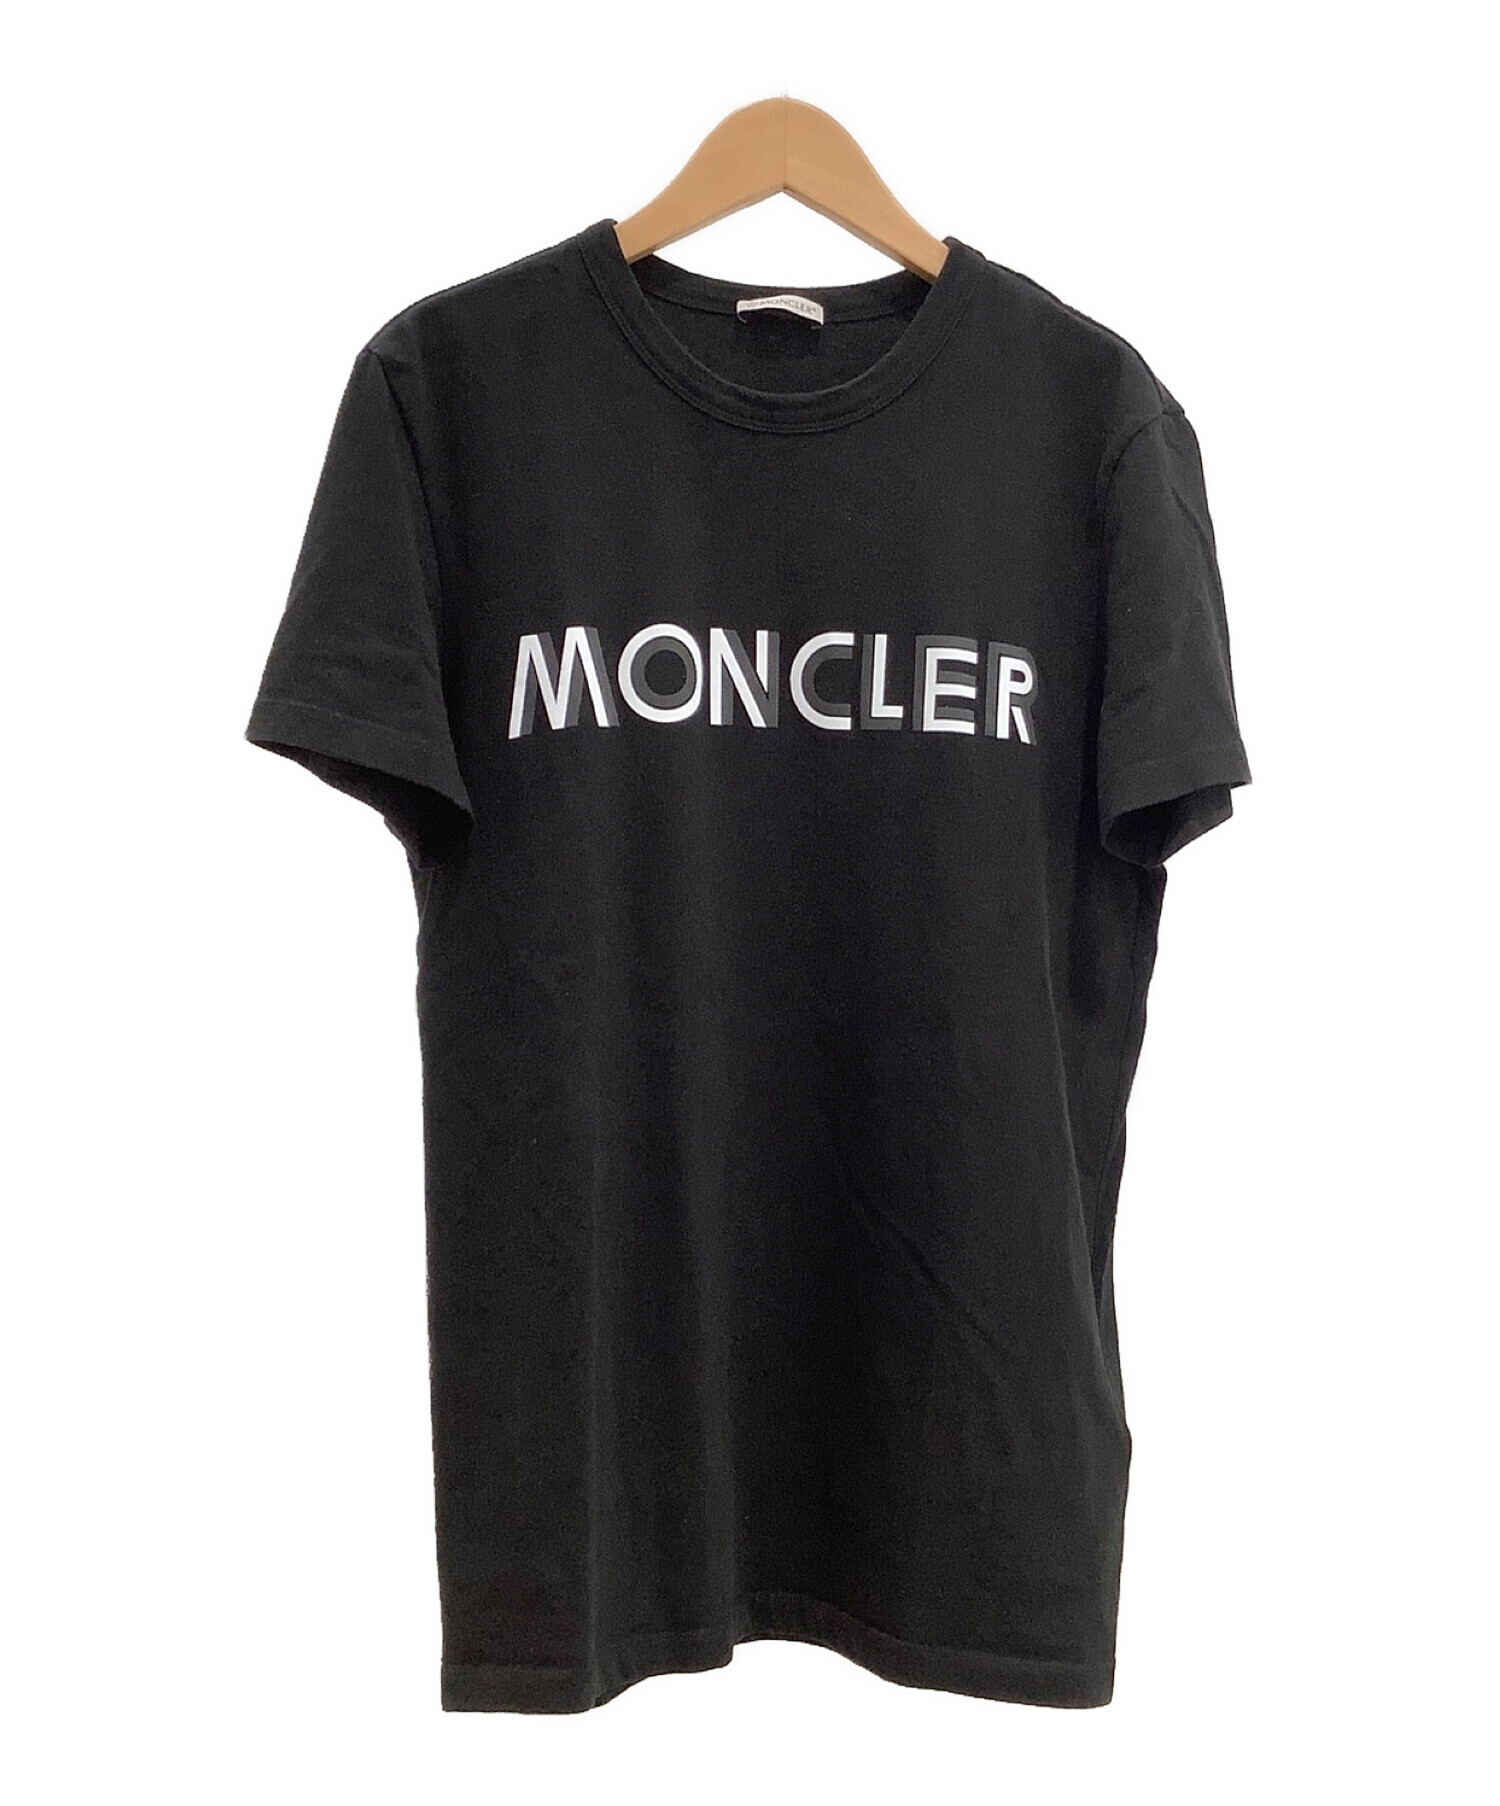 MONCLER メンズTシャツ 今月値下げします！トップス